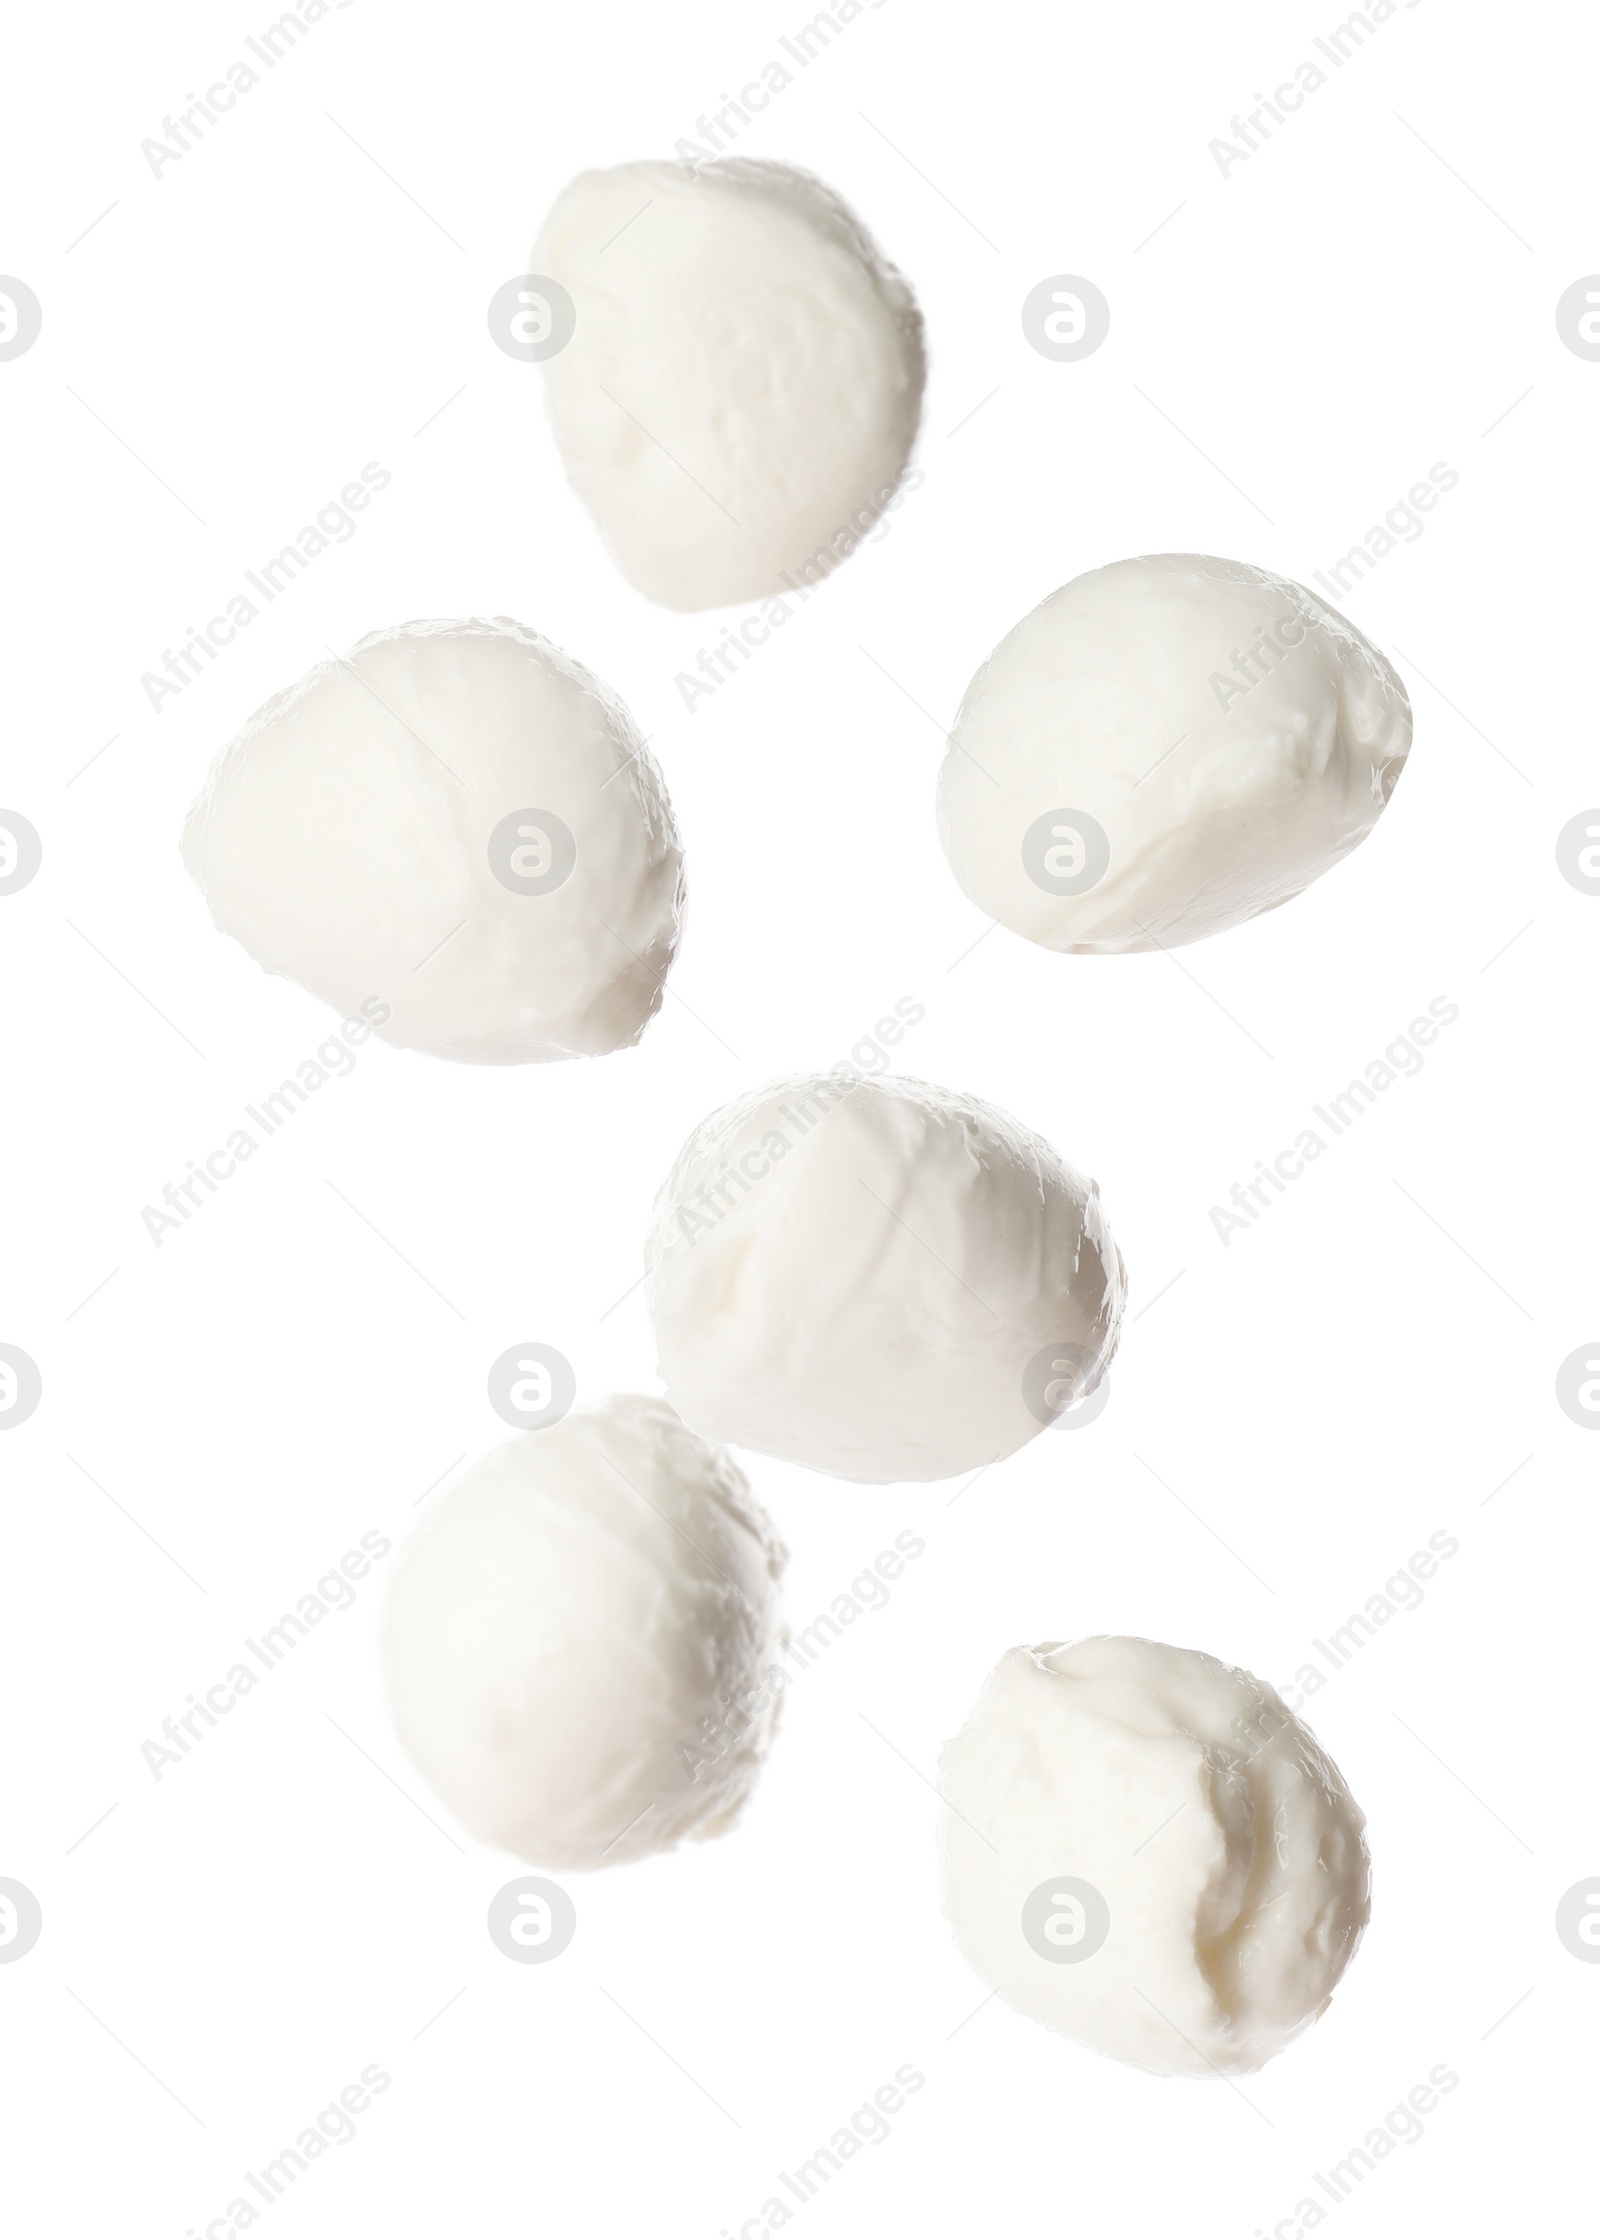 Image of Mozzarella cheese balls falling on white background